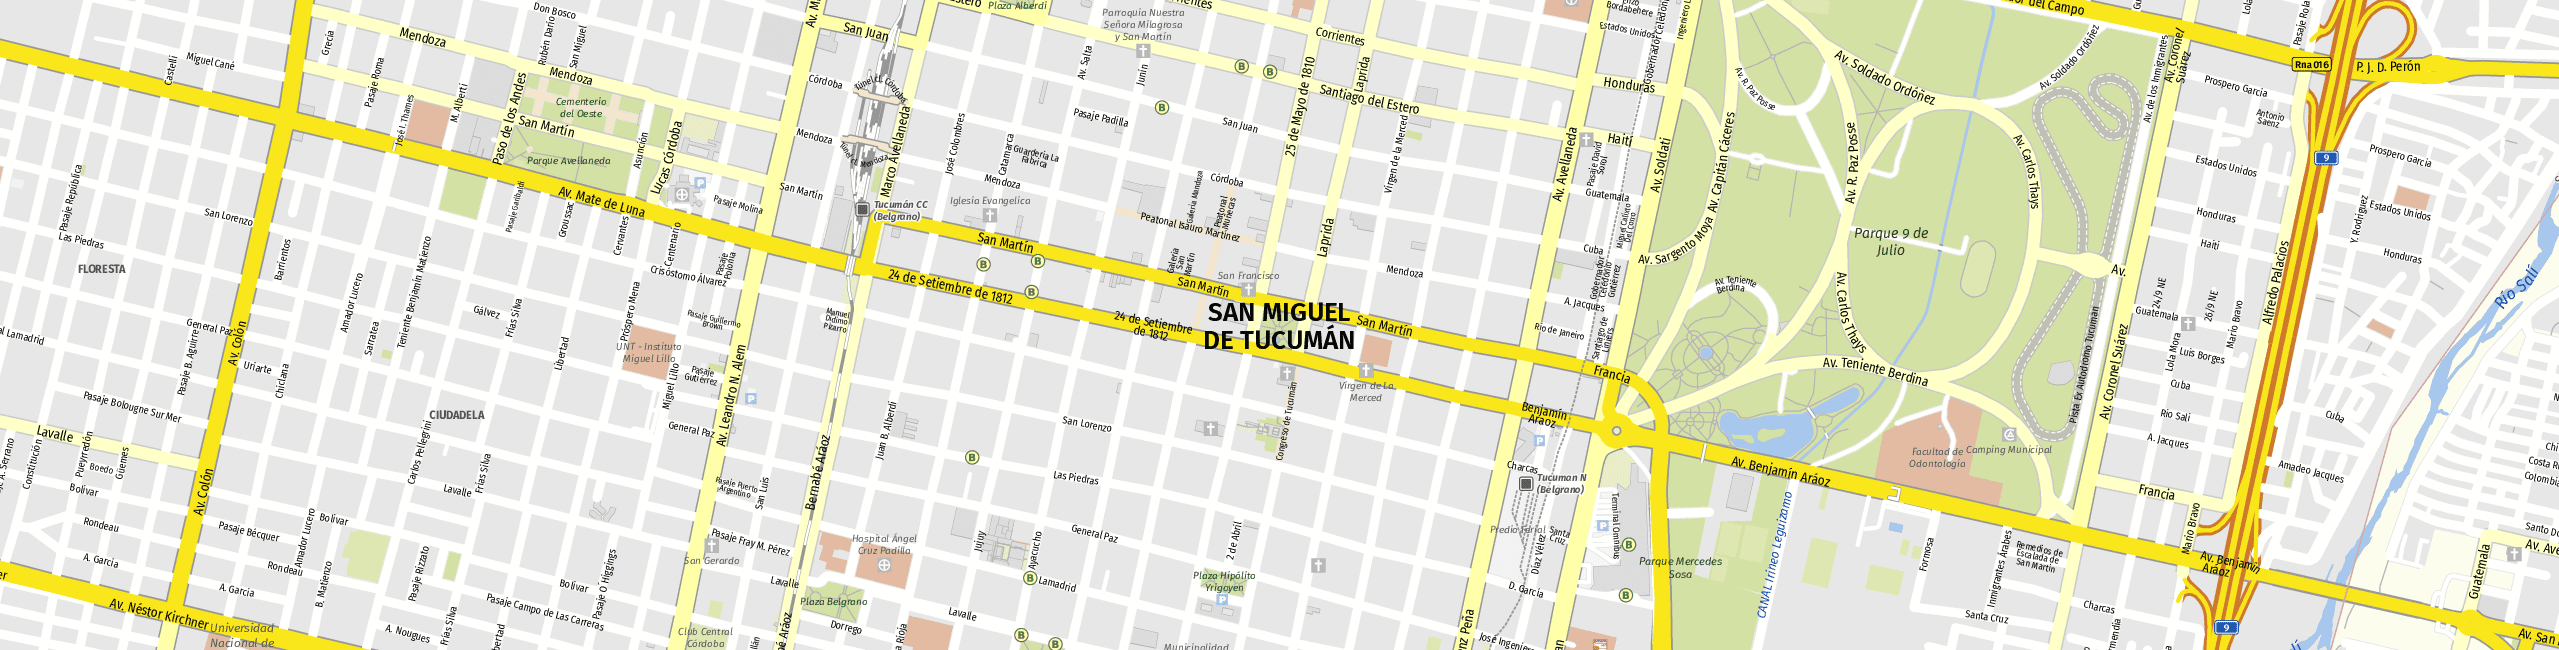 Stadtplan San Miguel de Tucumán zum Downloaden.